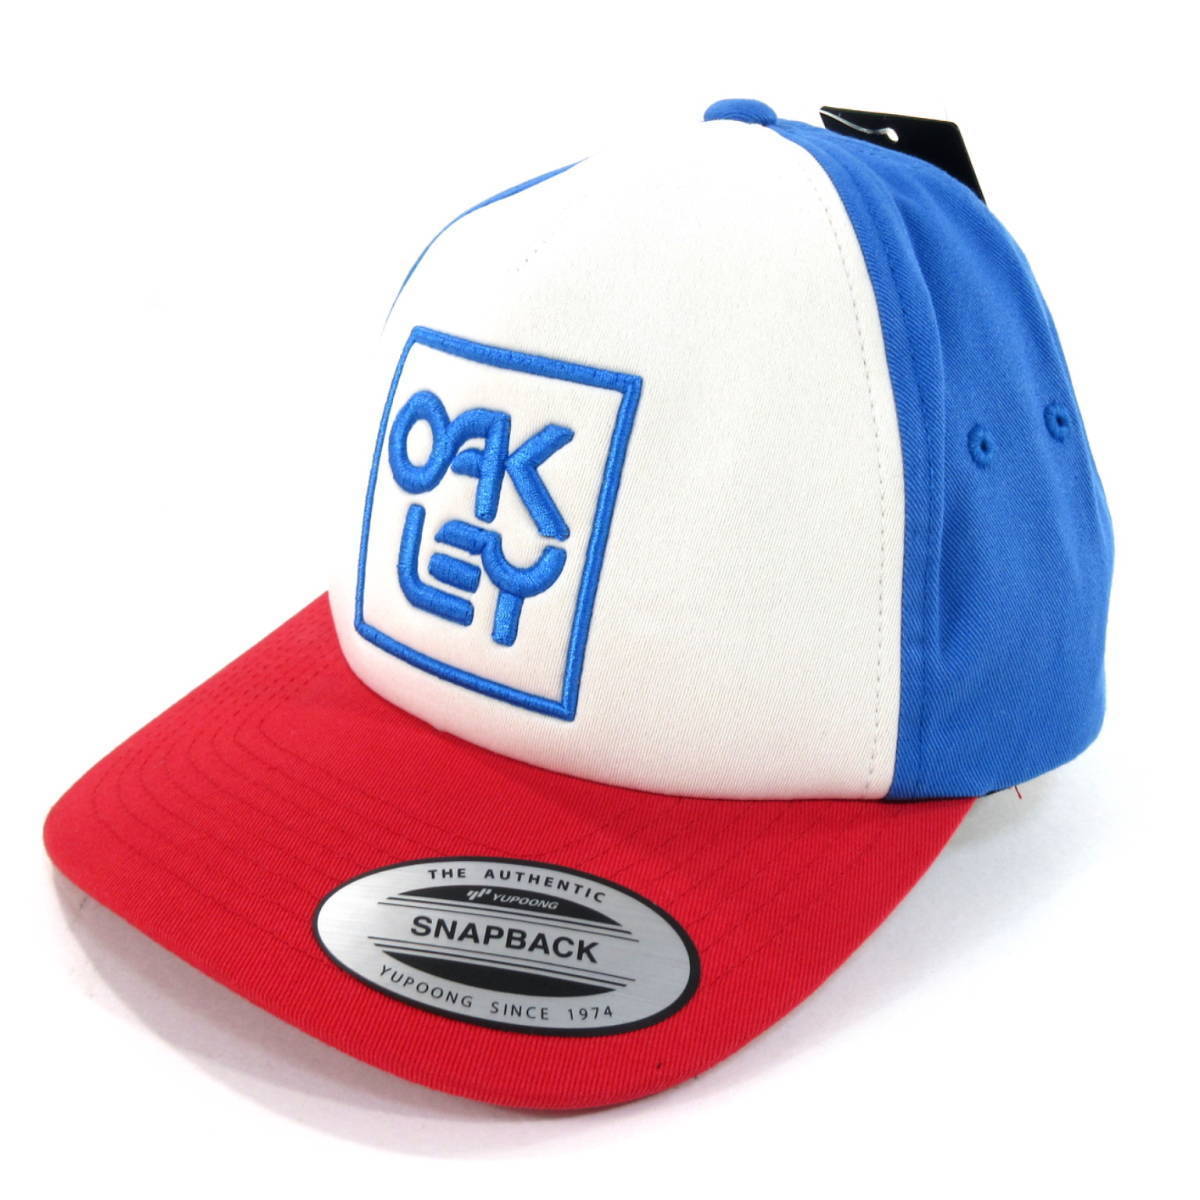 新品◆OAKLEY◆SNAPBACK LOGO HAT フリーサイズ 青/白/赤◆オークリー ゴルフキャップ 帽子 スナップバック ロゴ刺繍◆J1850cの画像1